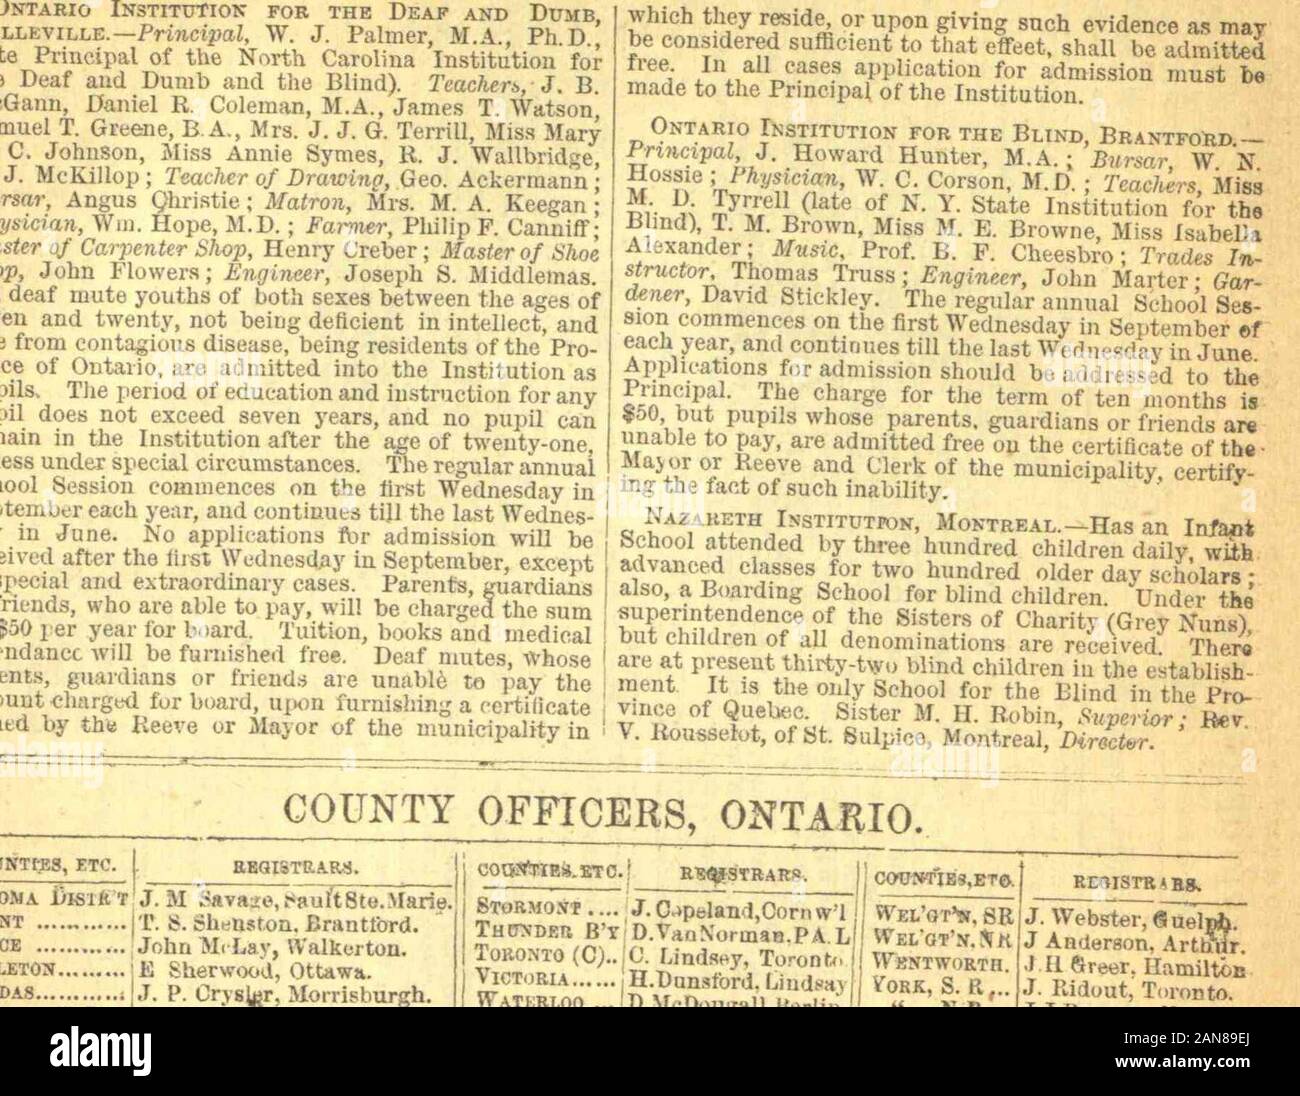 The Canadian Almanac And Directory 1875 1876 S Ico Ja Sfa Ga G P 5 2 G S Ssas 3 3 gflt3 Aggigis Ss S Fa A G Biggs A T Lt Gsrll R Fa Bsiga Cf Fef O E A S 2 Fa 5